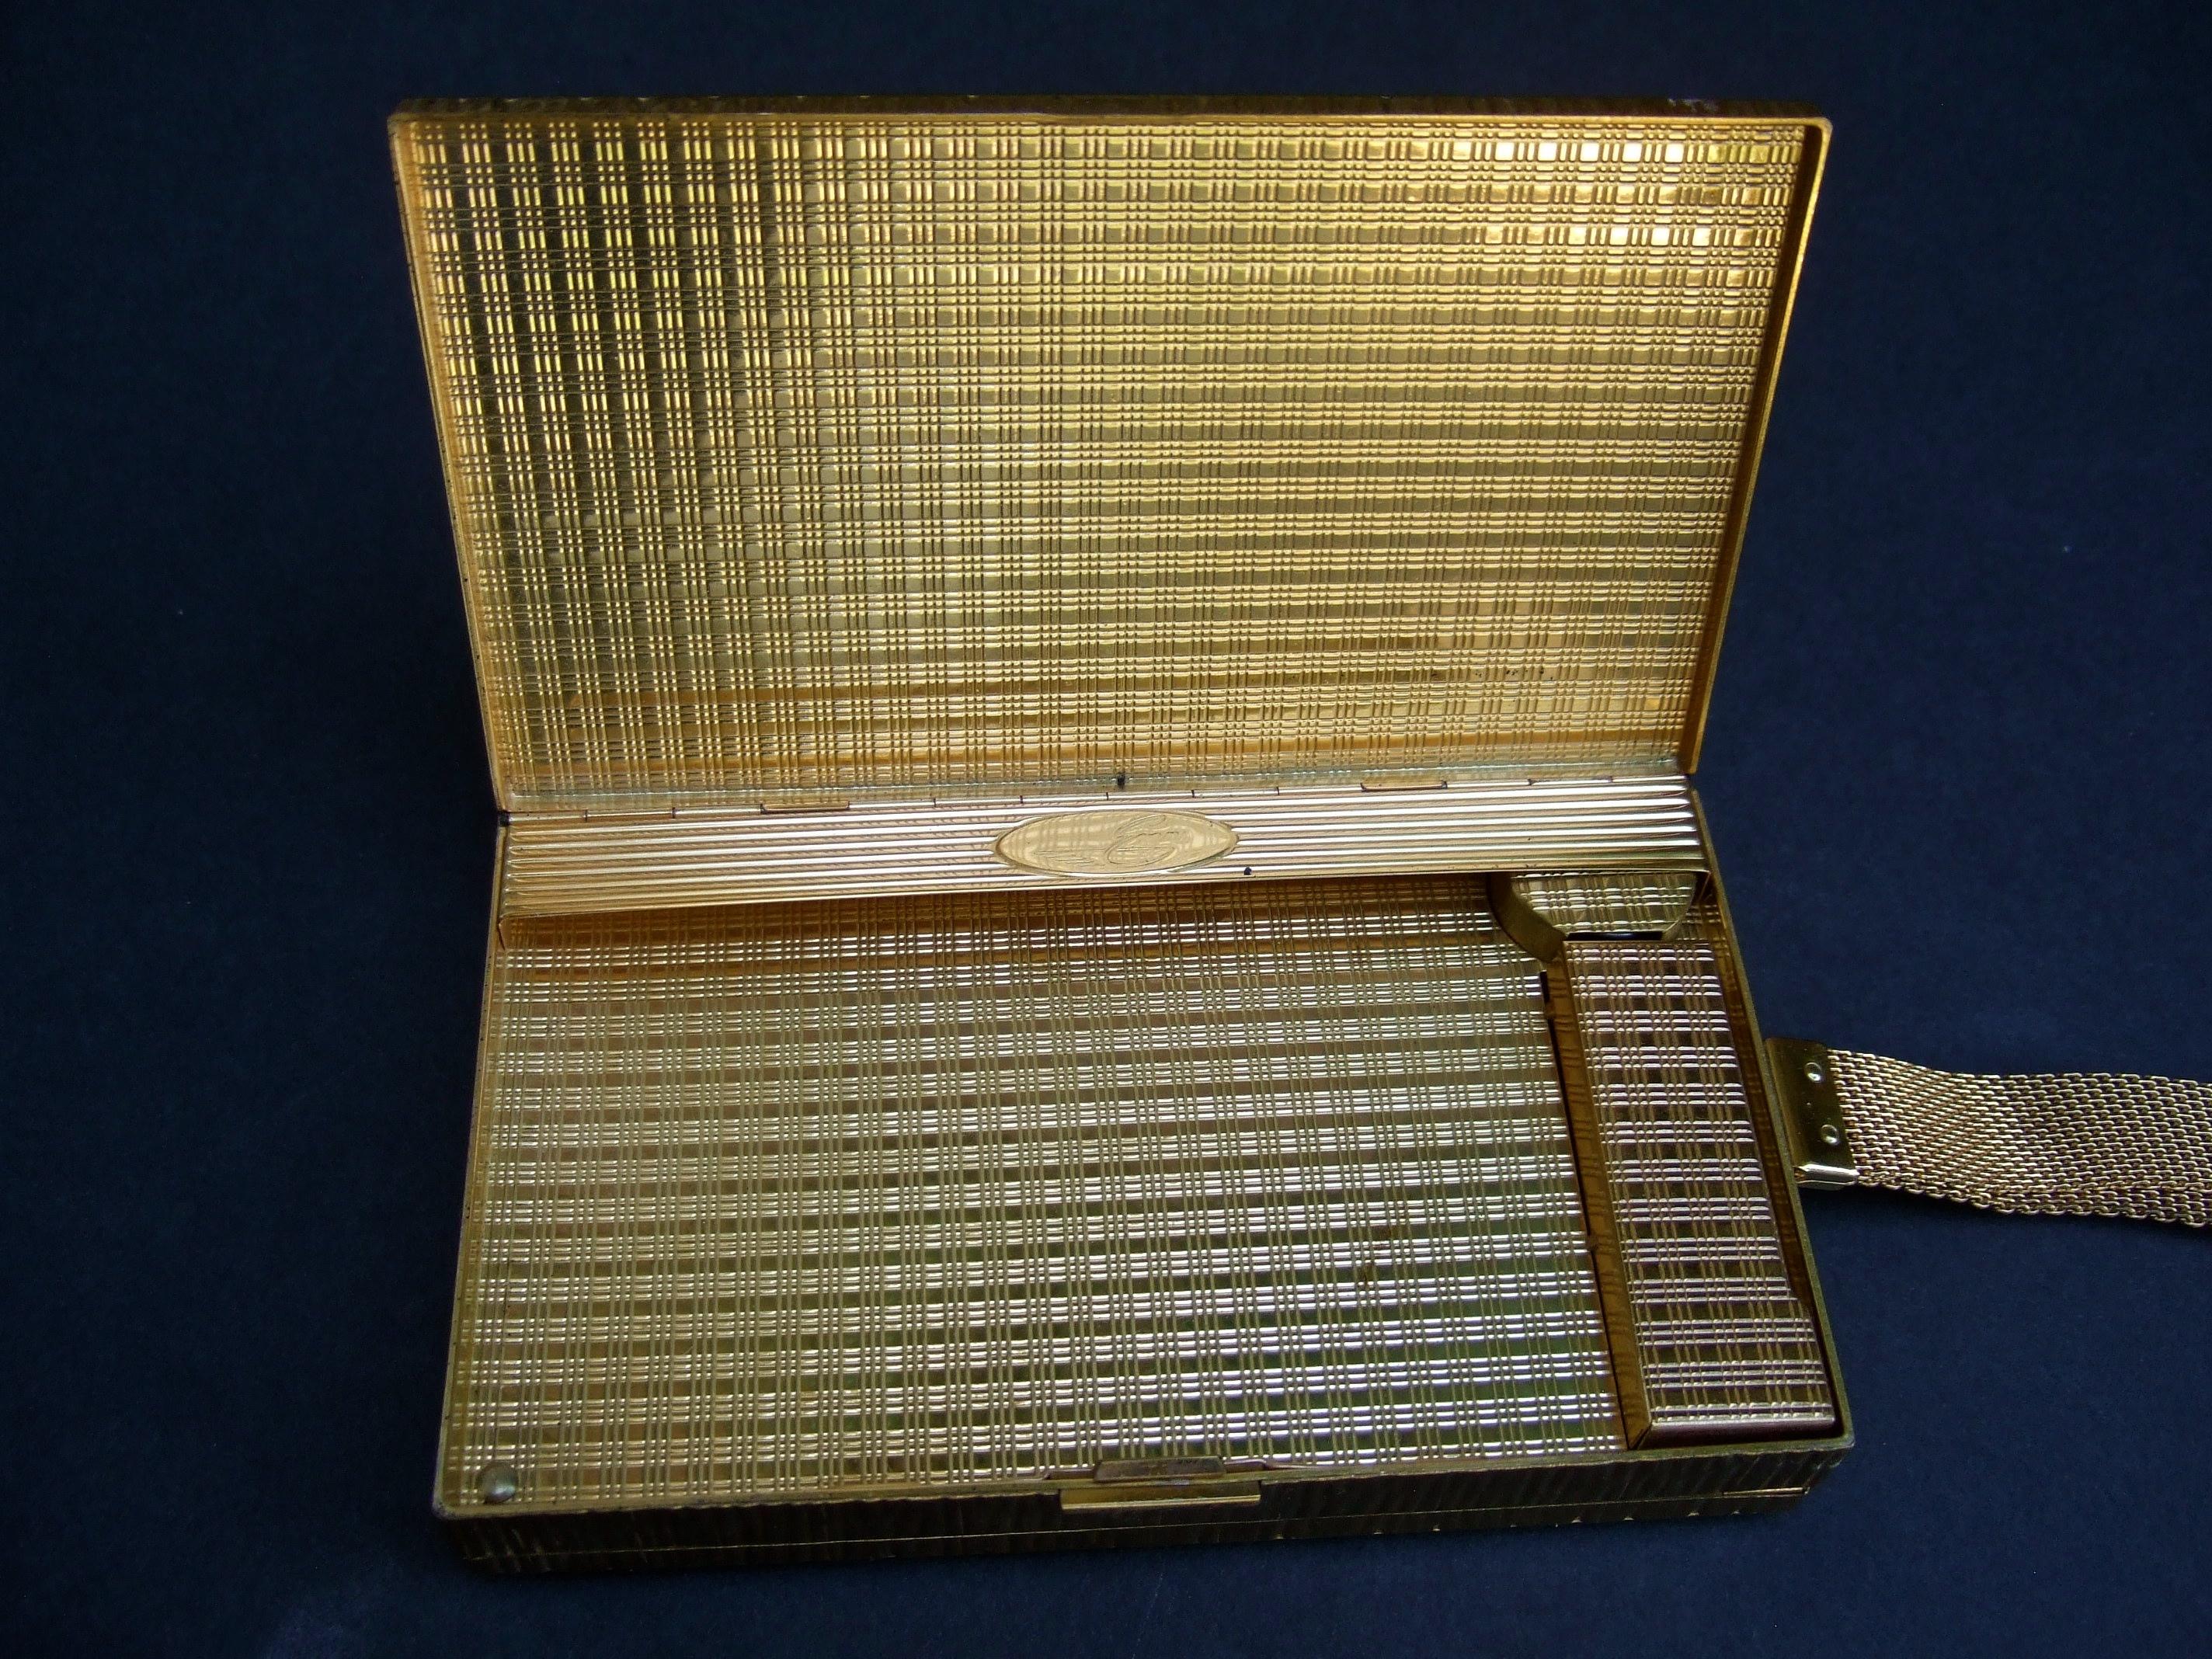 Evans Gilt Metal Guilloche Enamel Evening Bag Compact Case c 1950s  For Sale 6